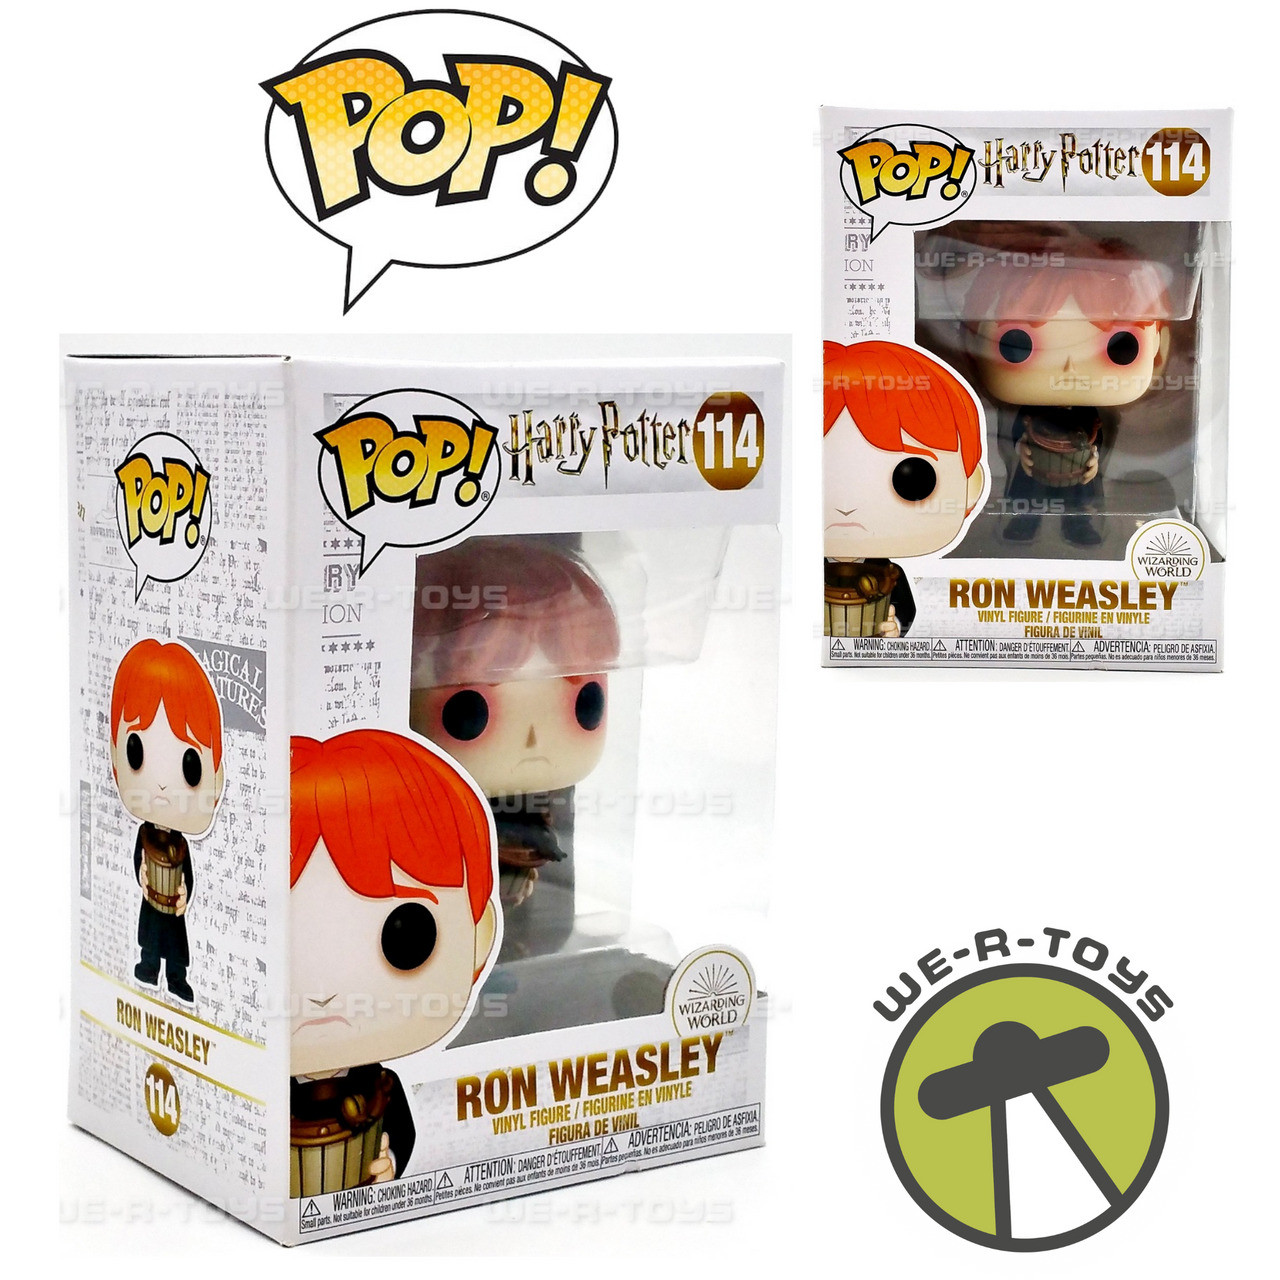 Funko POP! Harry Potter #12 Ron Weasley (Yule Ball) Vinyl Figure NEW -  We-R-Toys